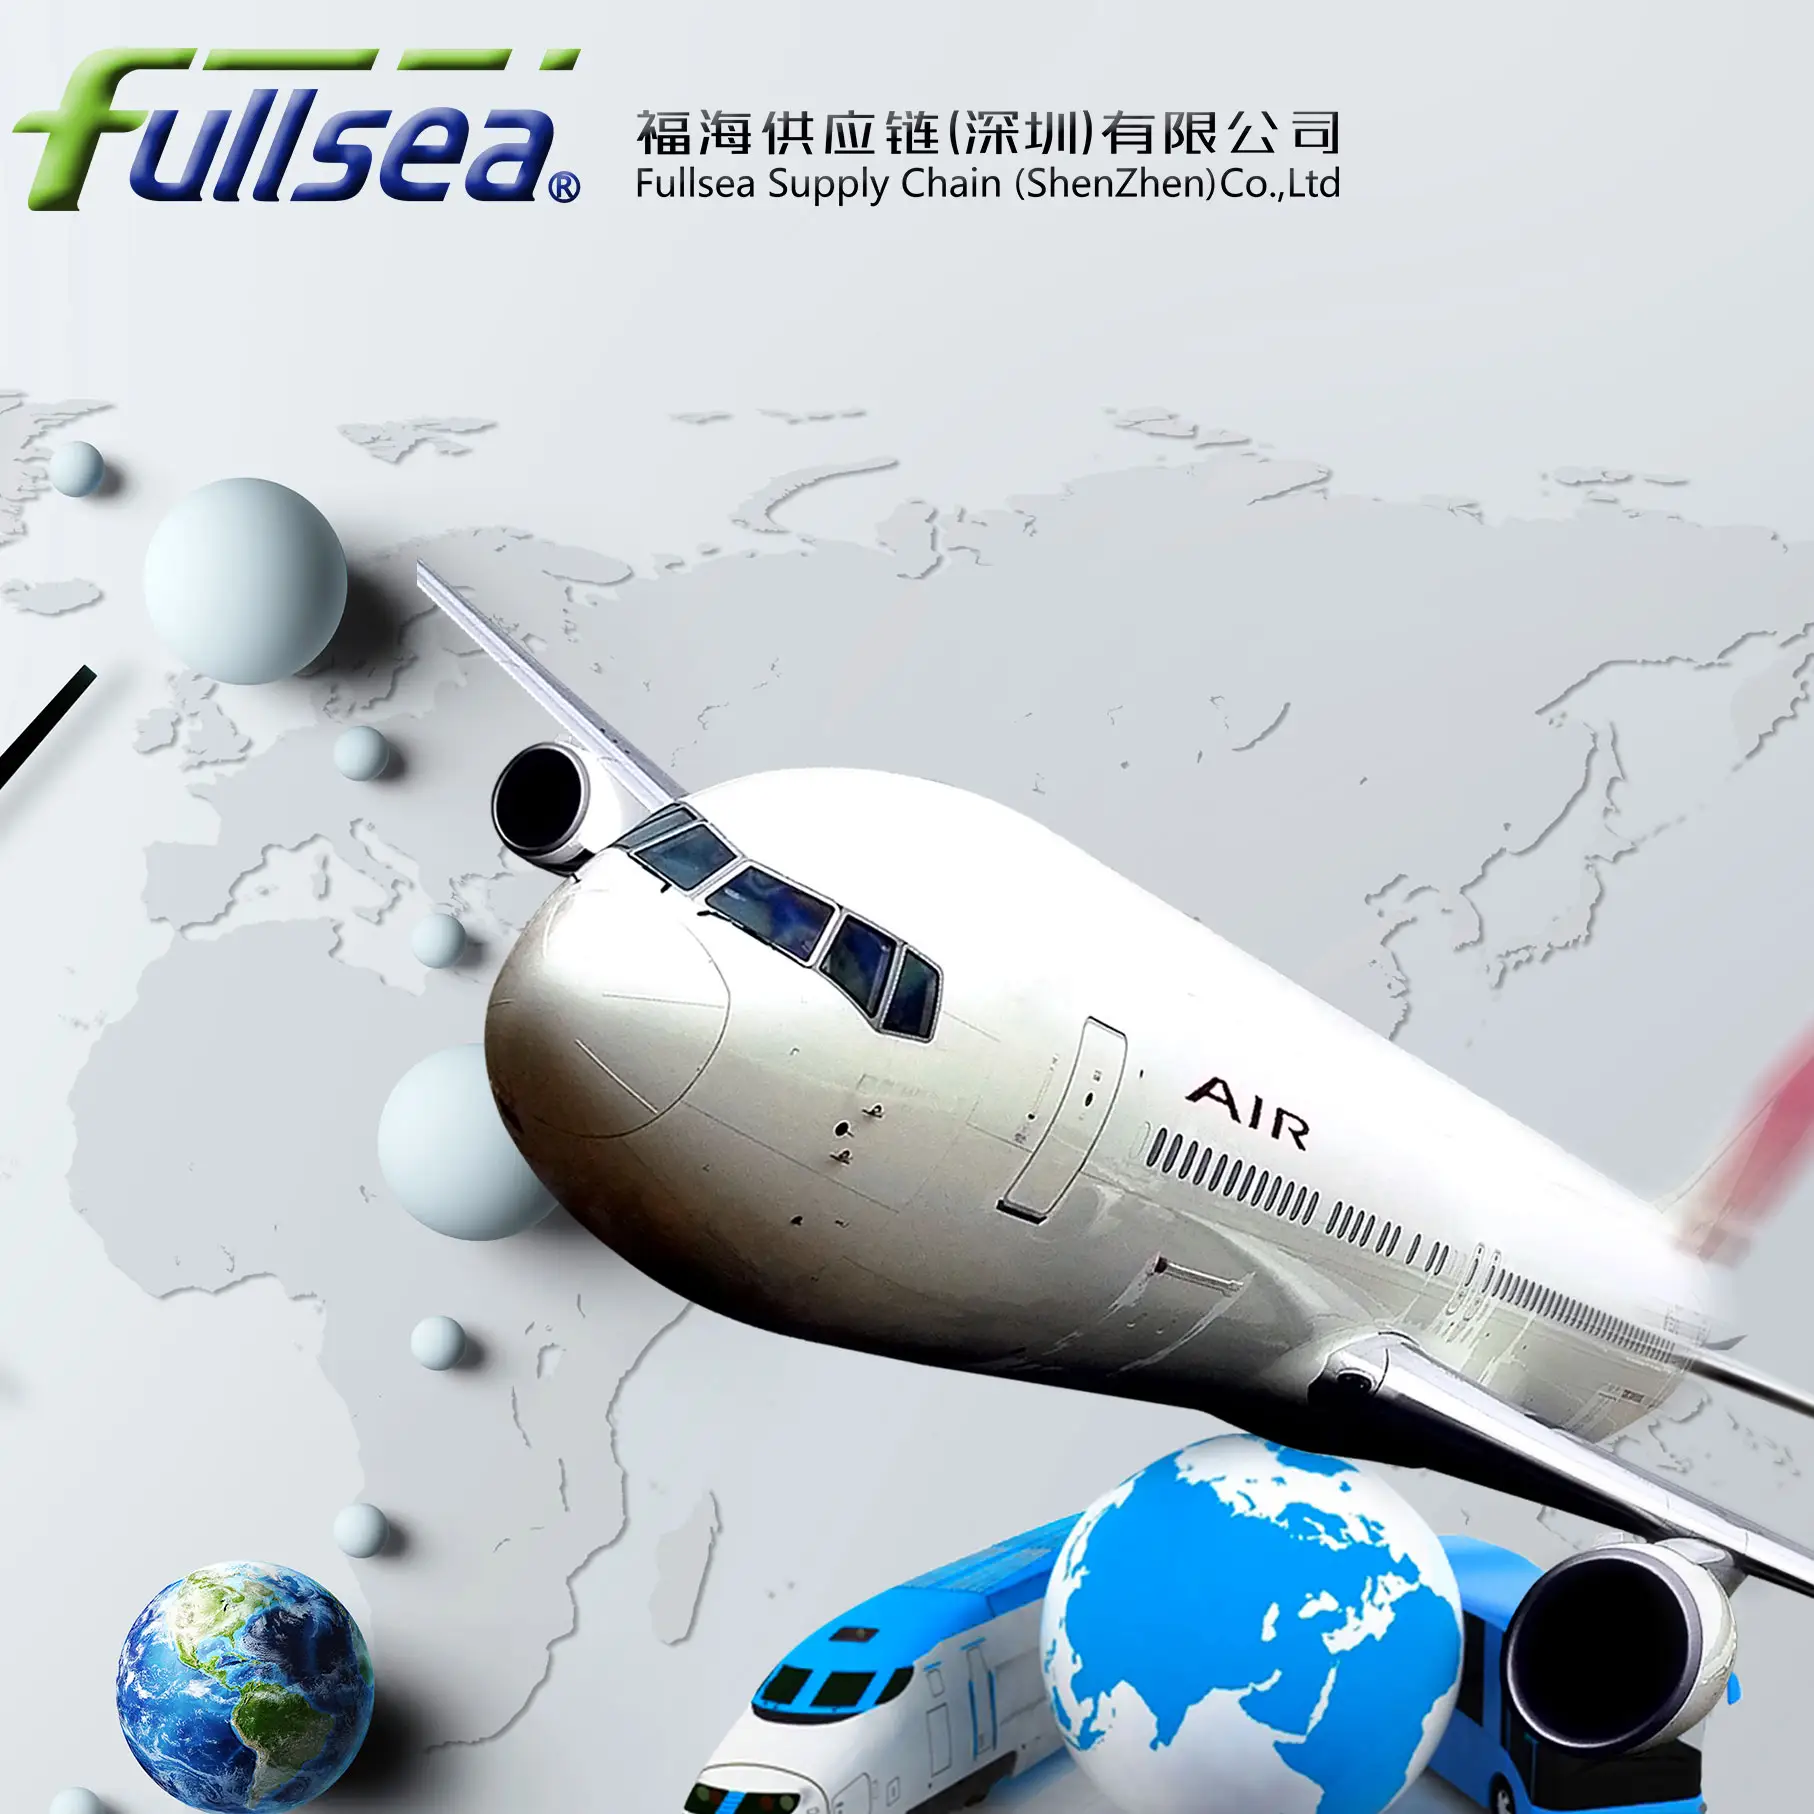 International air transport ng mga bulk cargo mula Shenzhen China to South Africa, serbisyo sa pinto-pinto